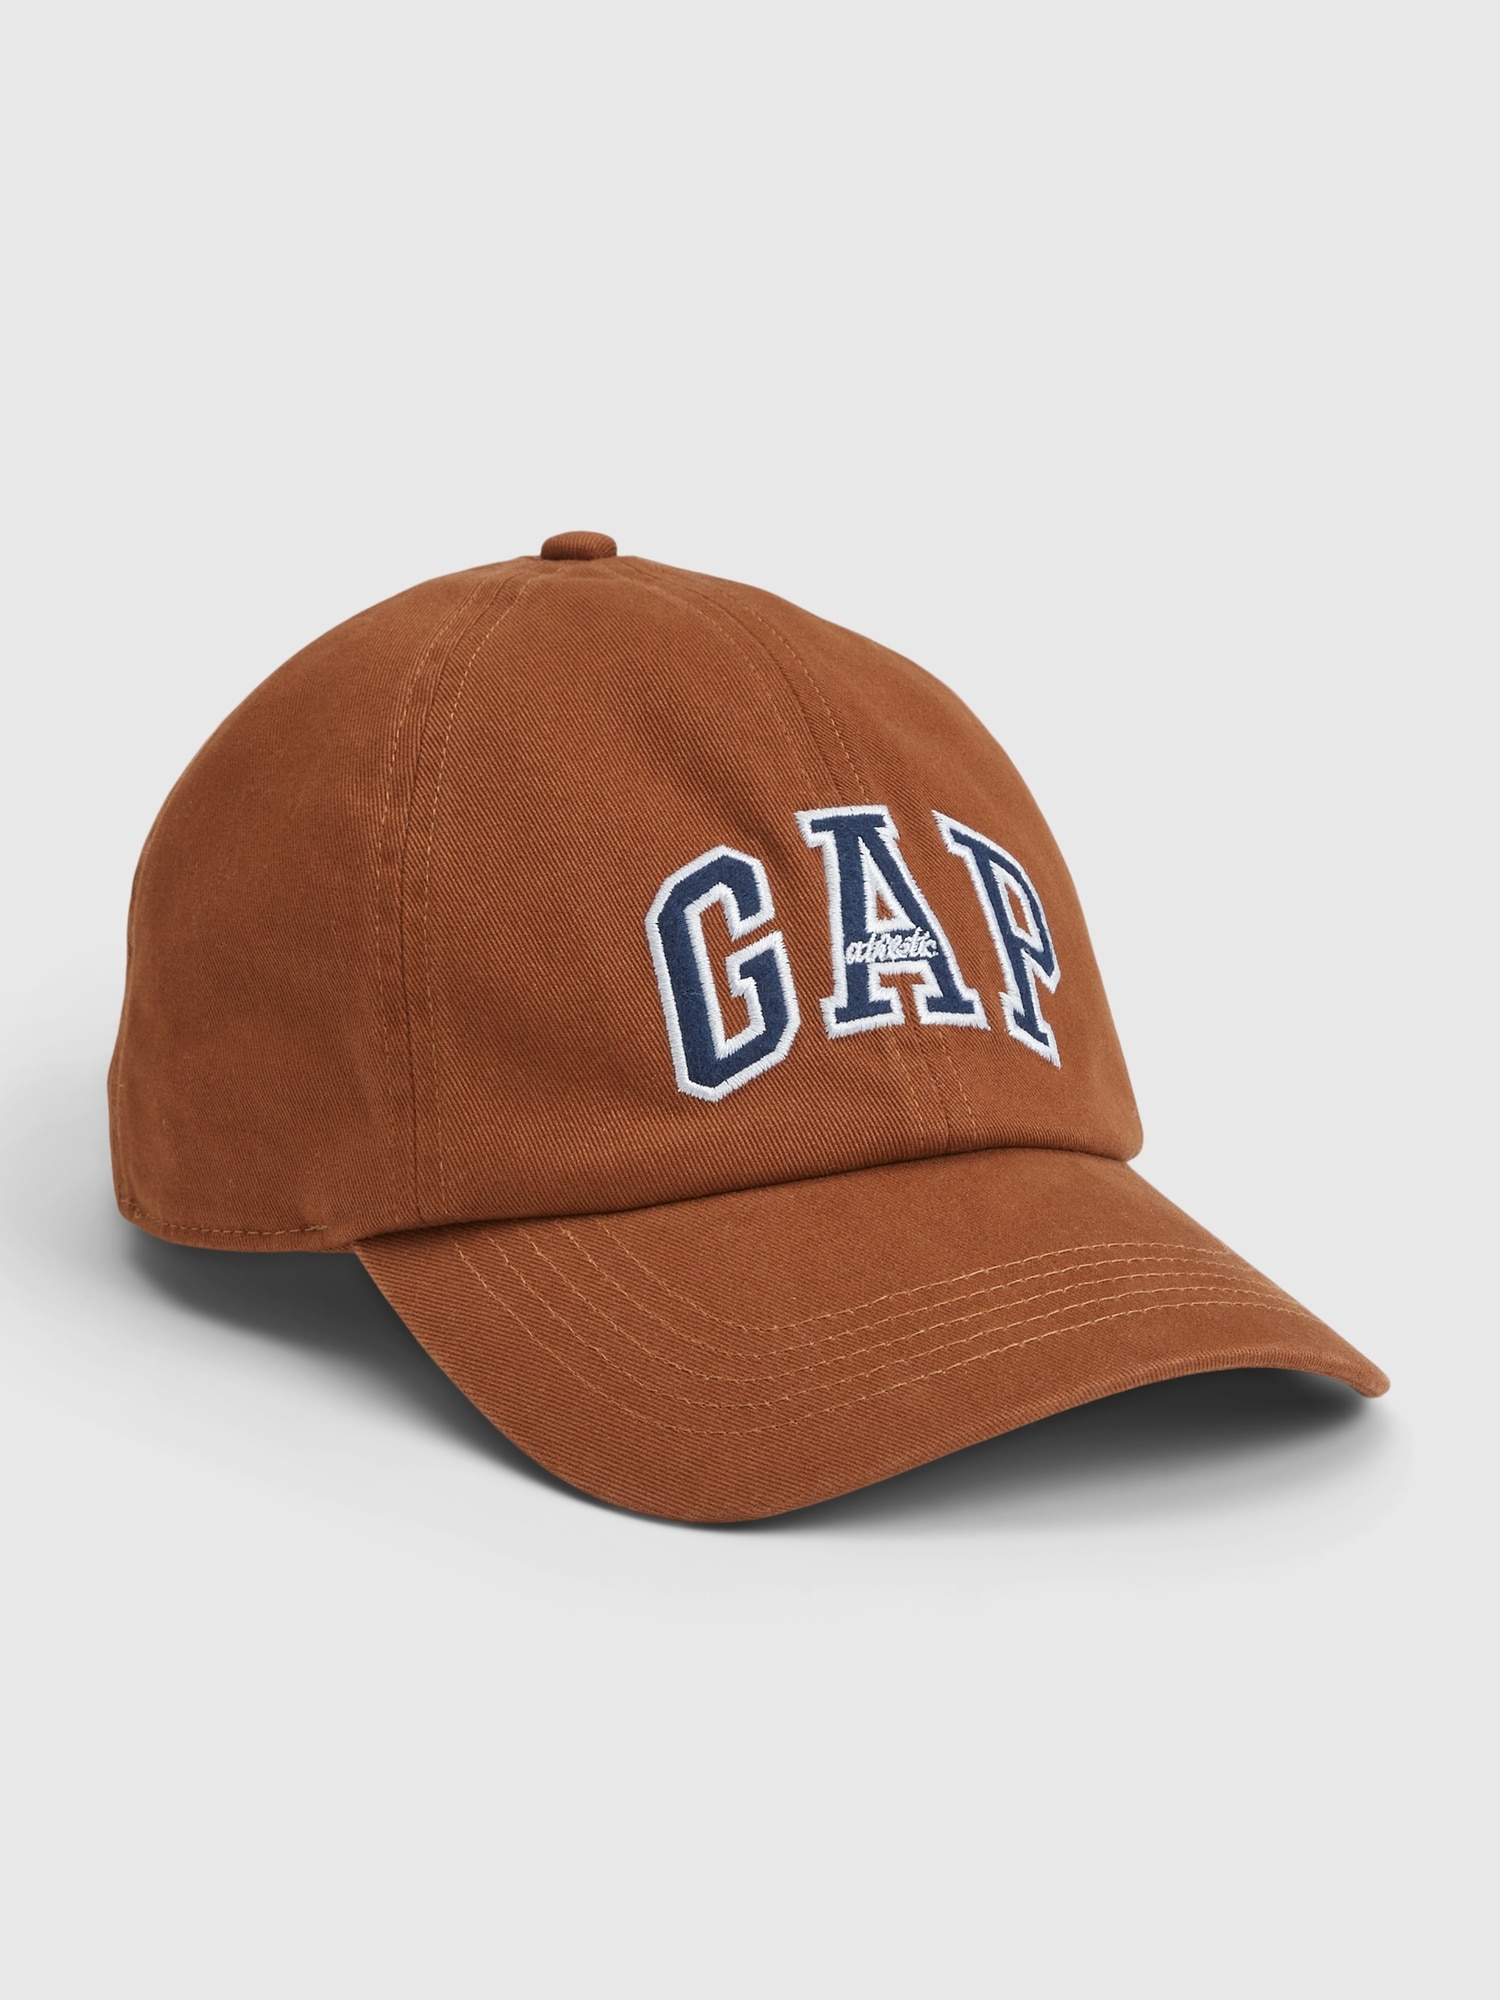 Gap Logo Baseball Hat